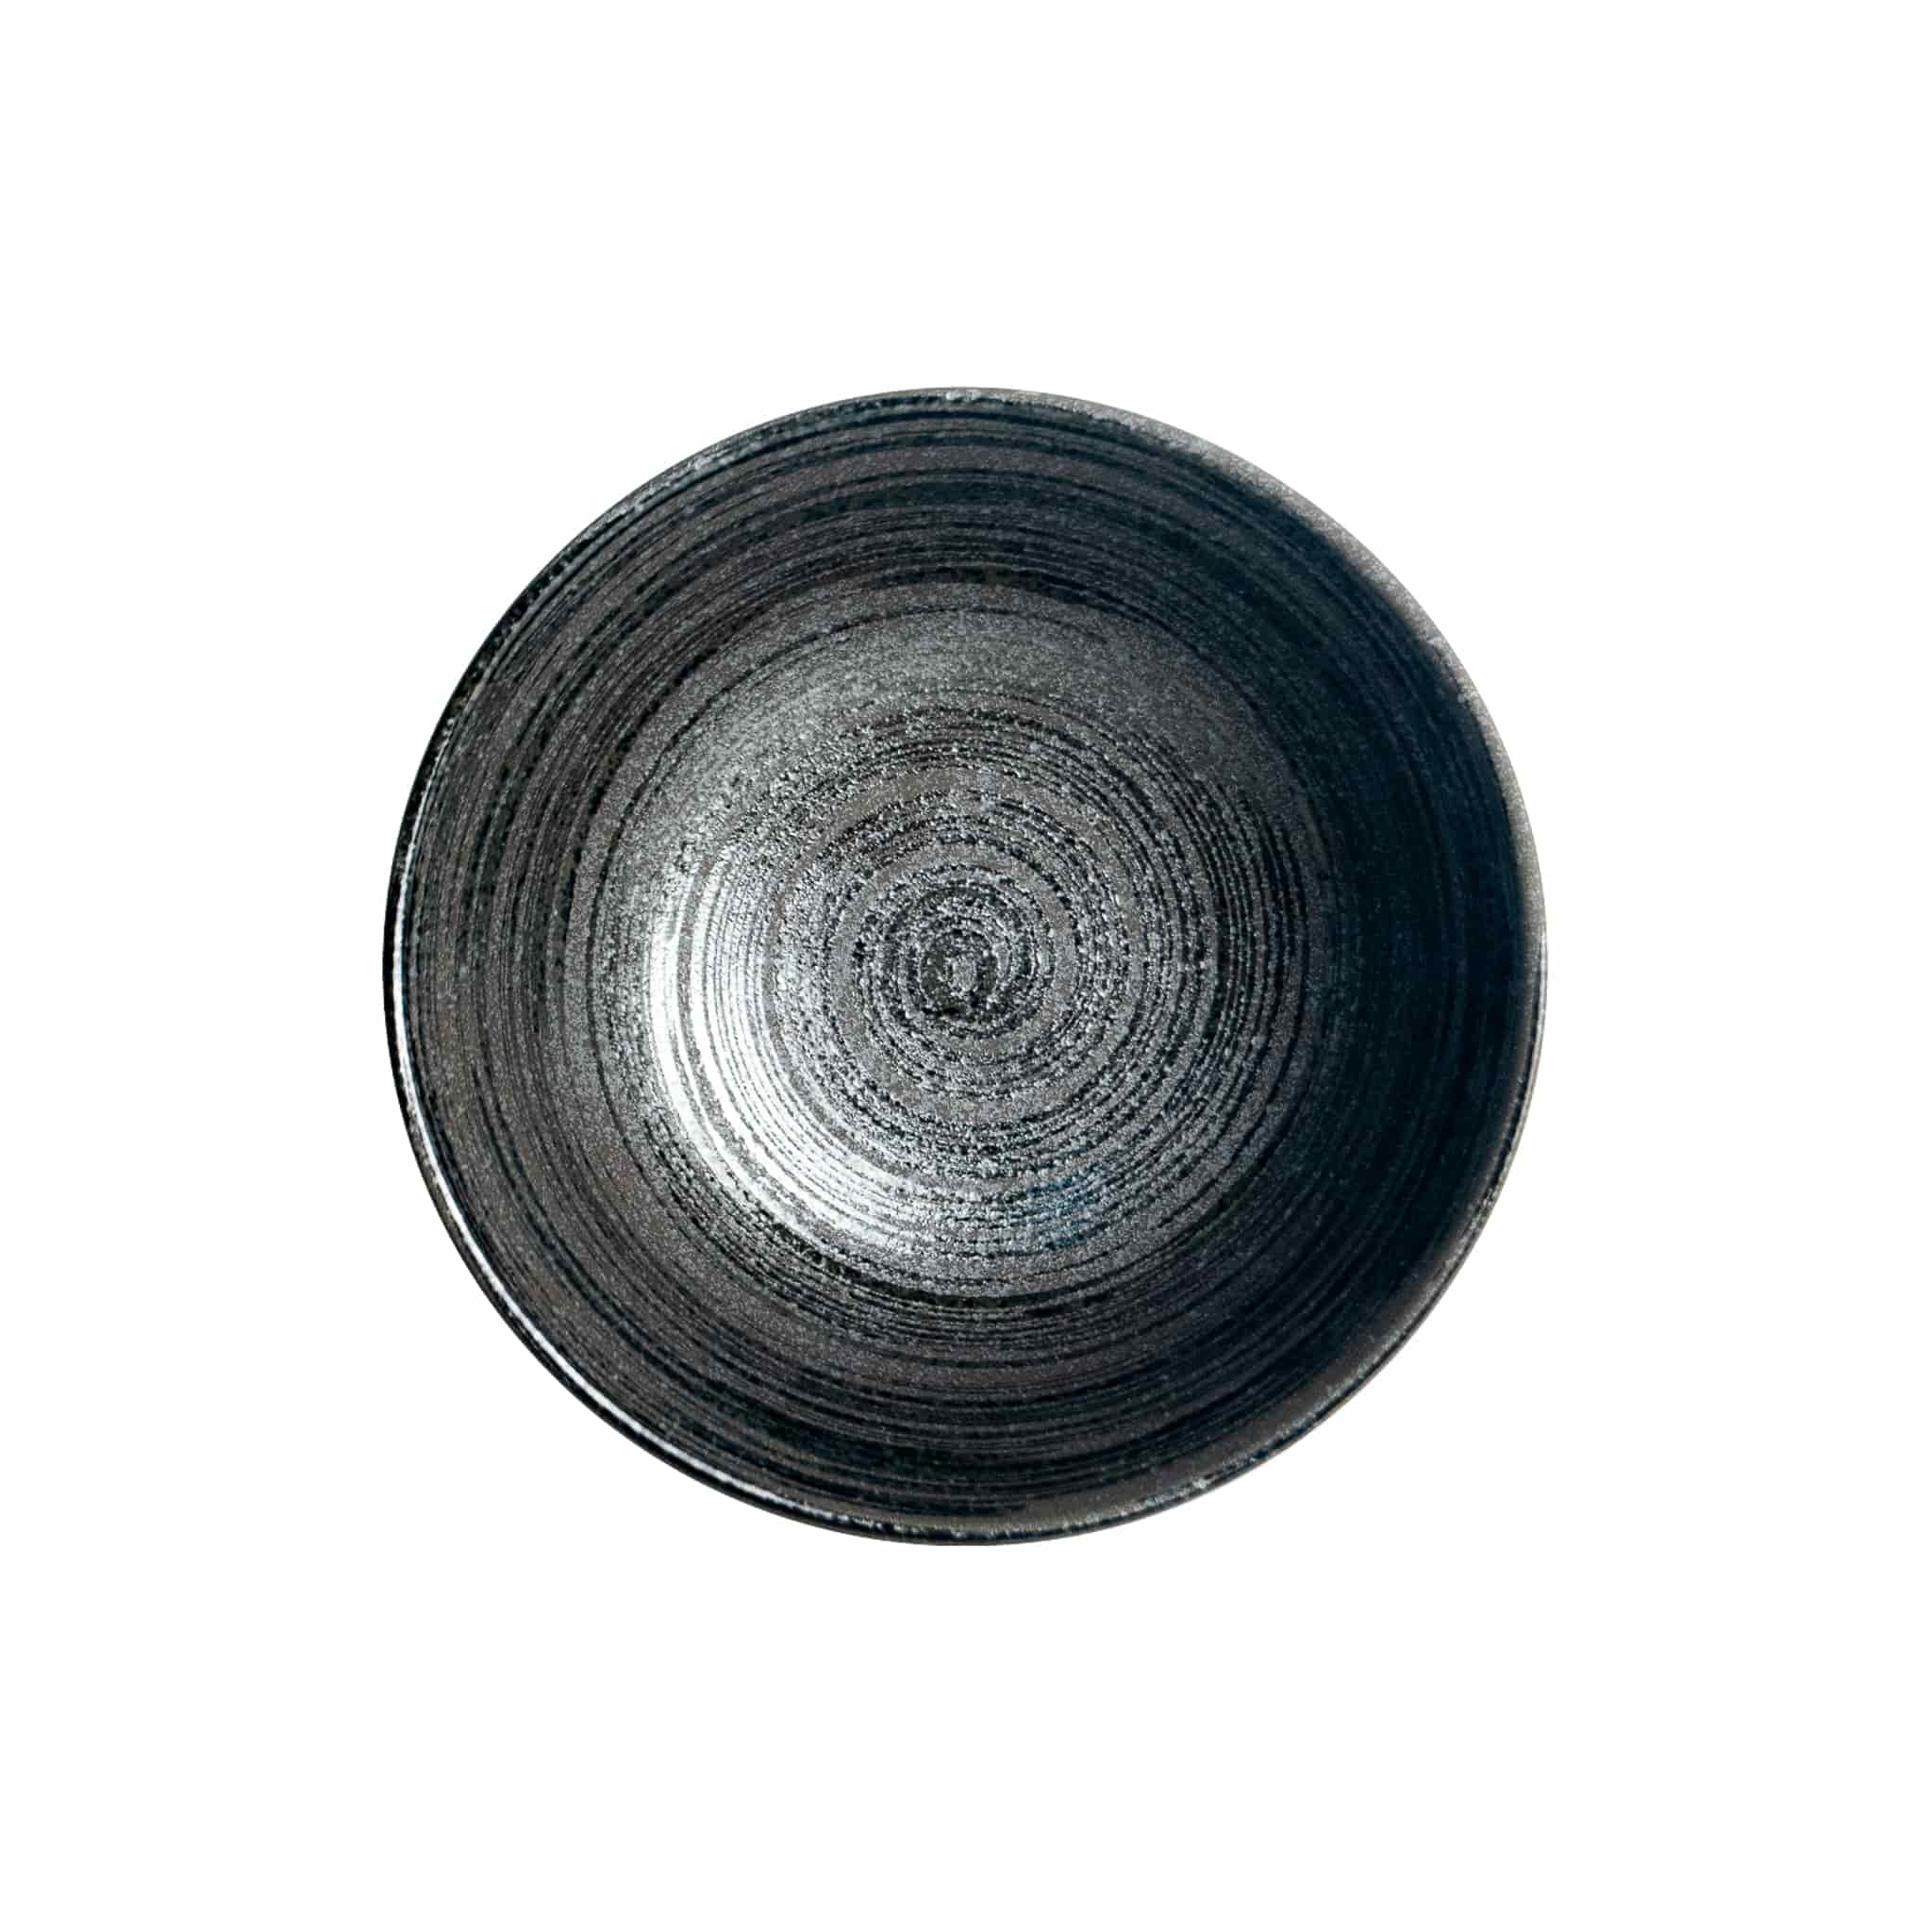 Kuromaru Ramen Bowl, 22cm